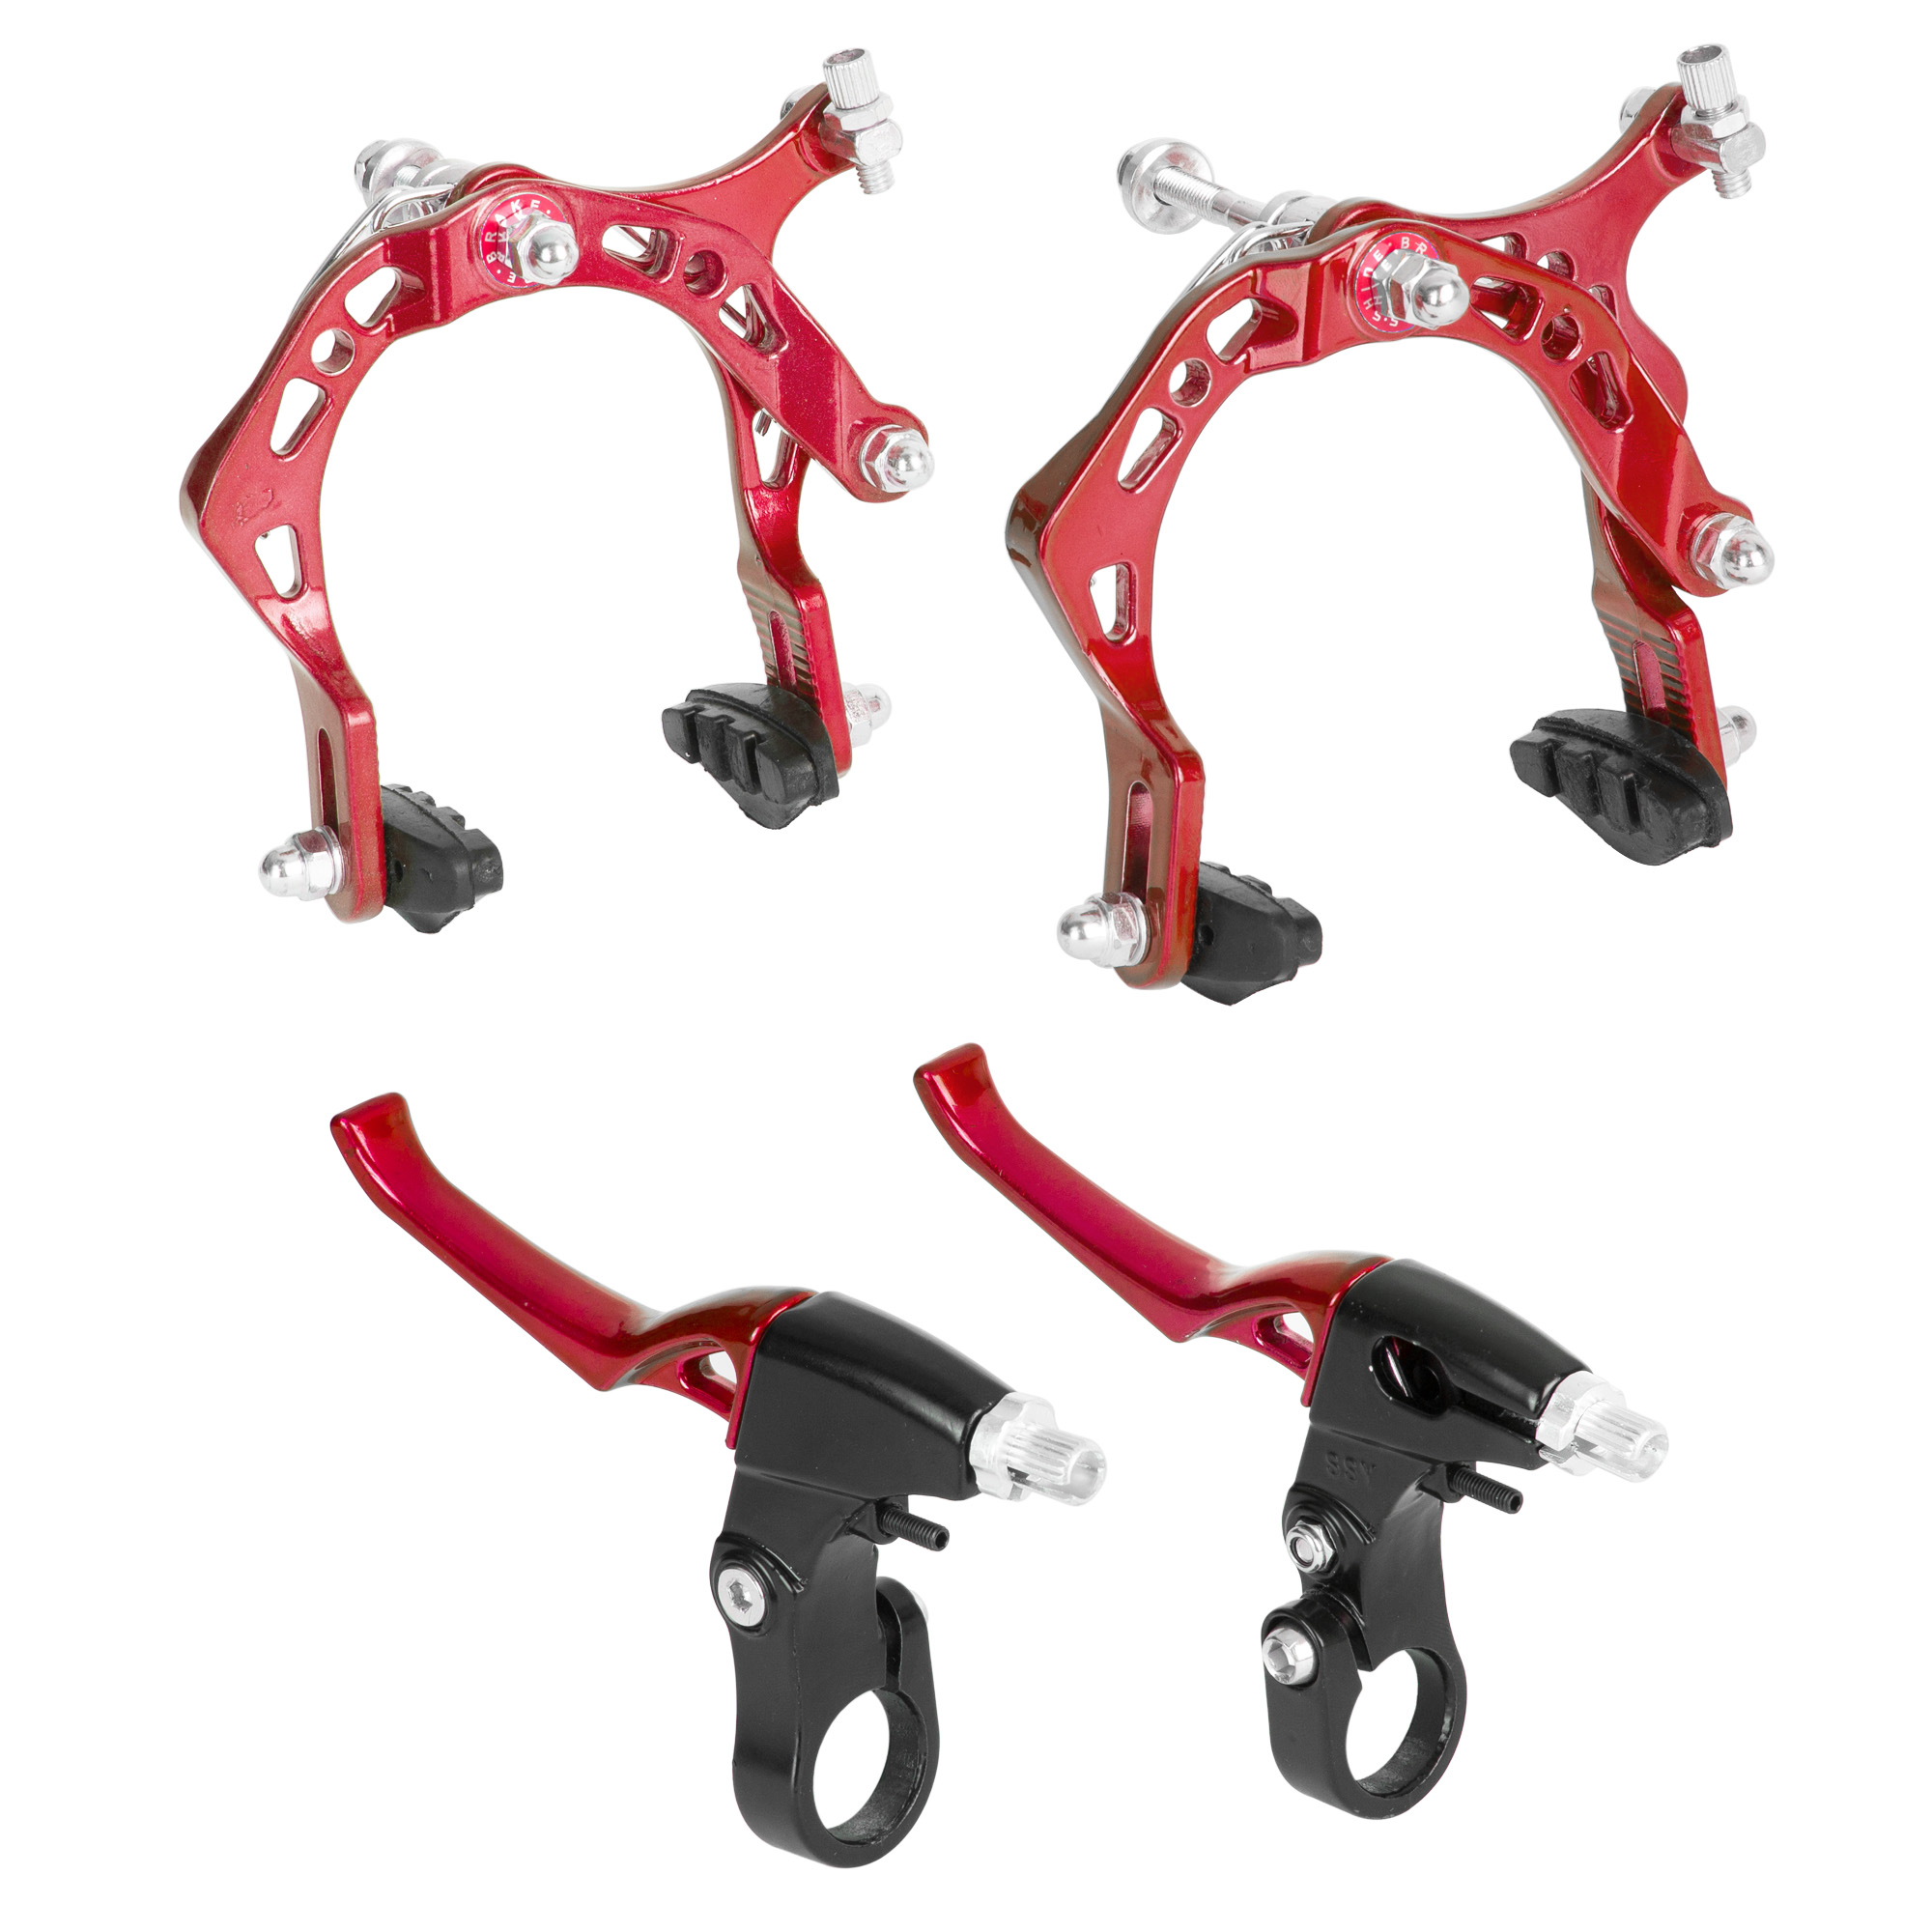 Ciclometa Detalles Zapatas de freno para bicicleta V-Brake con tornillo  allen 70mm rojo/negro S Shine